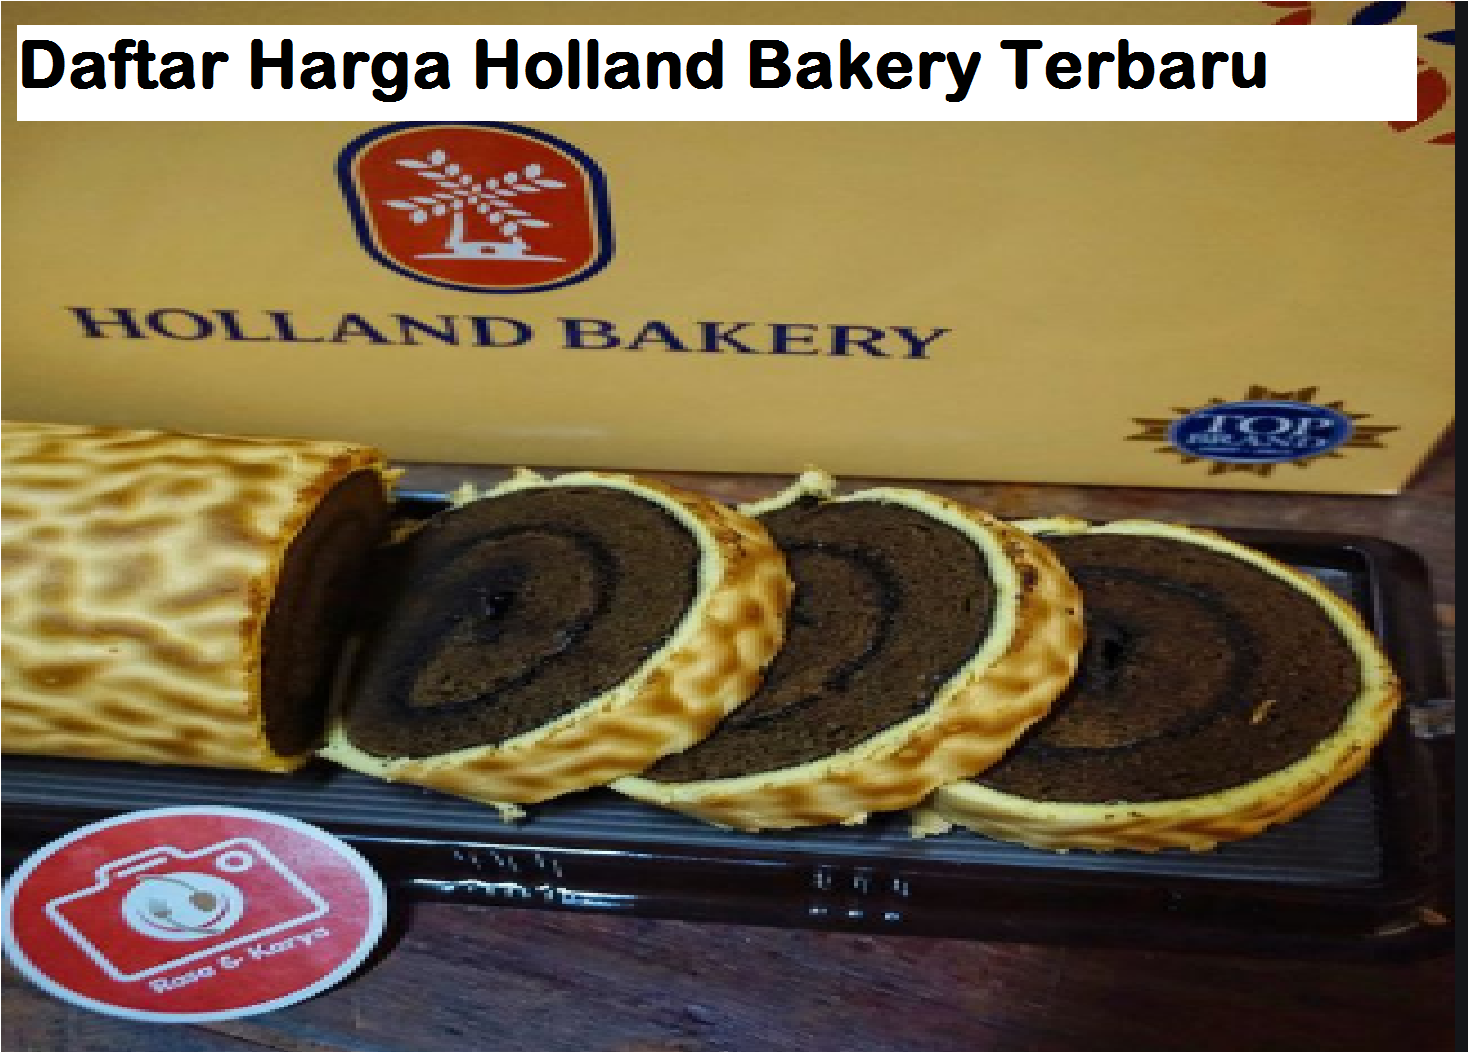 Daftar Harga Holland Bakery Terbaru 2019 Harian Nusantara